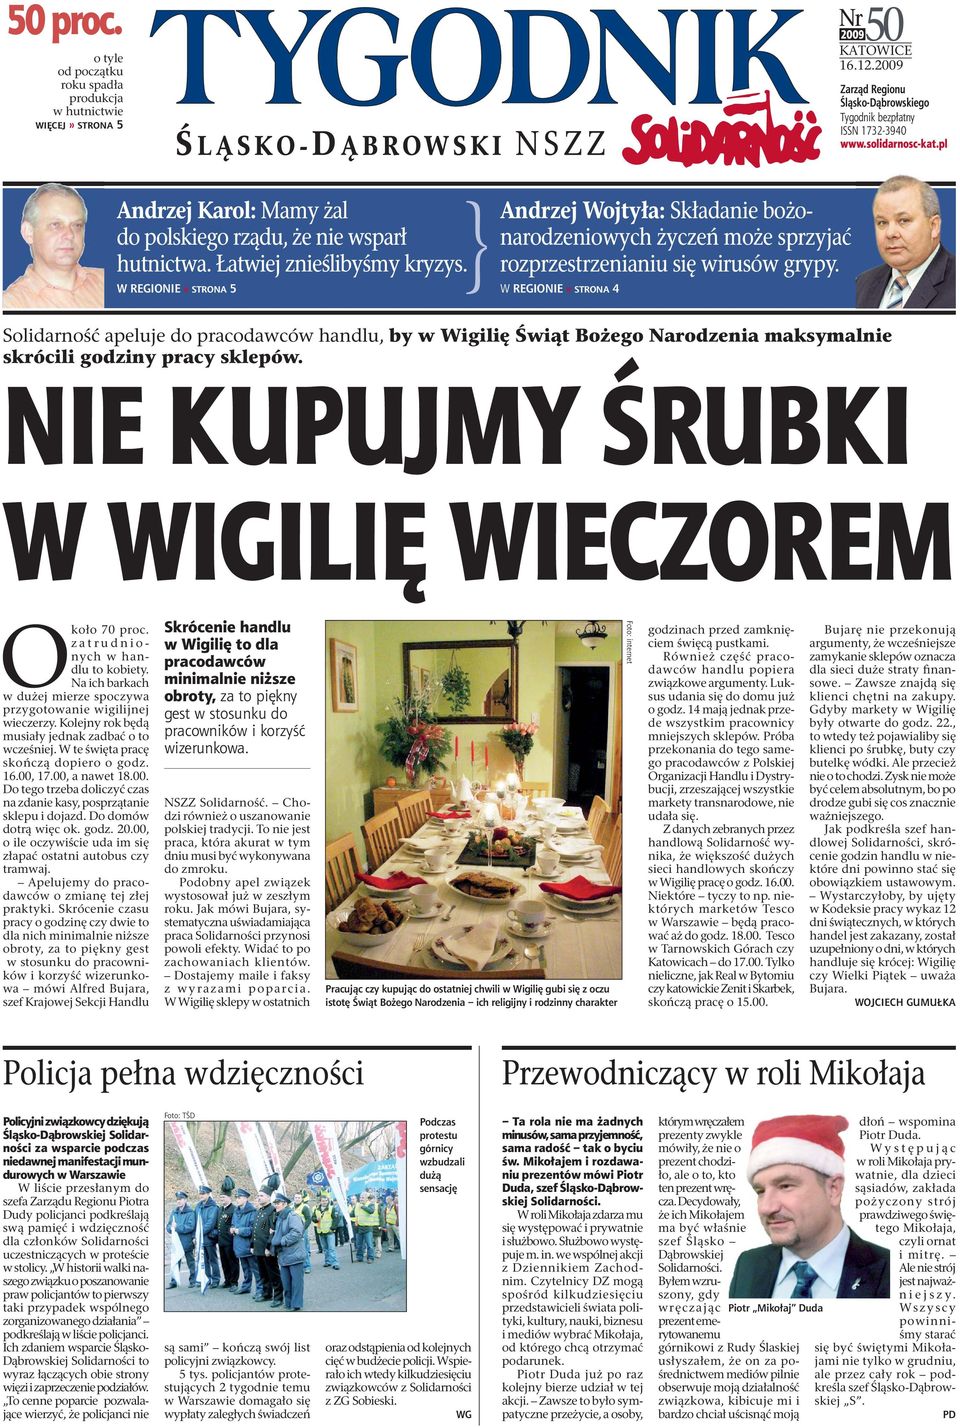 W REGIONIE» STRONA 5 Andrzej Wojtyła: Składanie bożonarodzeniowych życzeń może sprzyjać rozprzestrzenianiu się wirusów grypy.